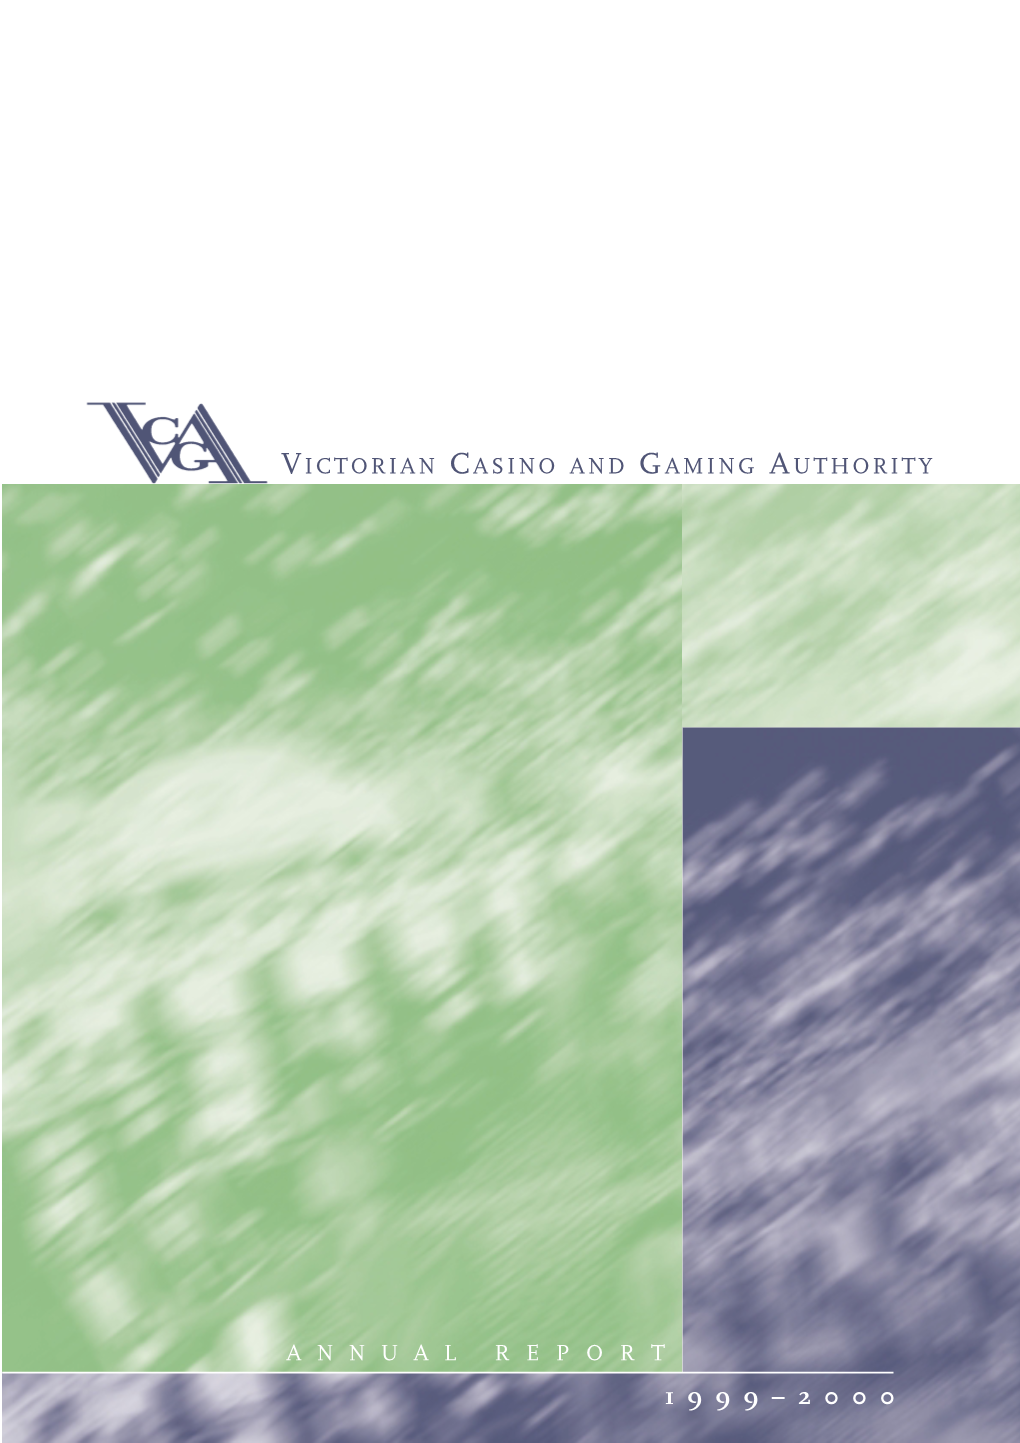 VCGA Annual Report 99/2000